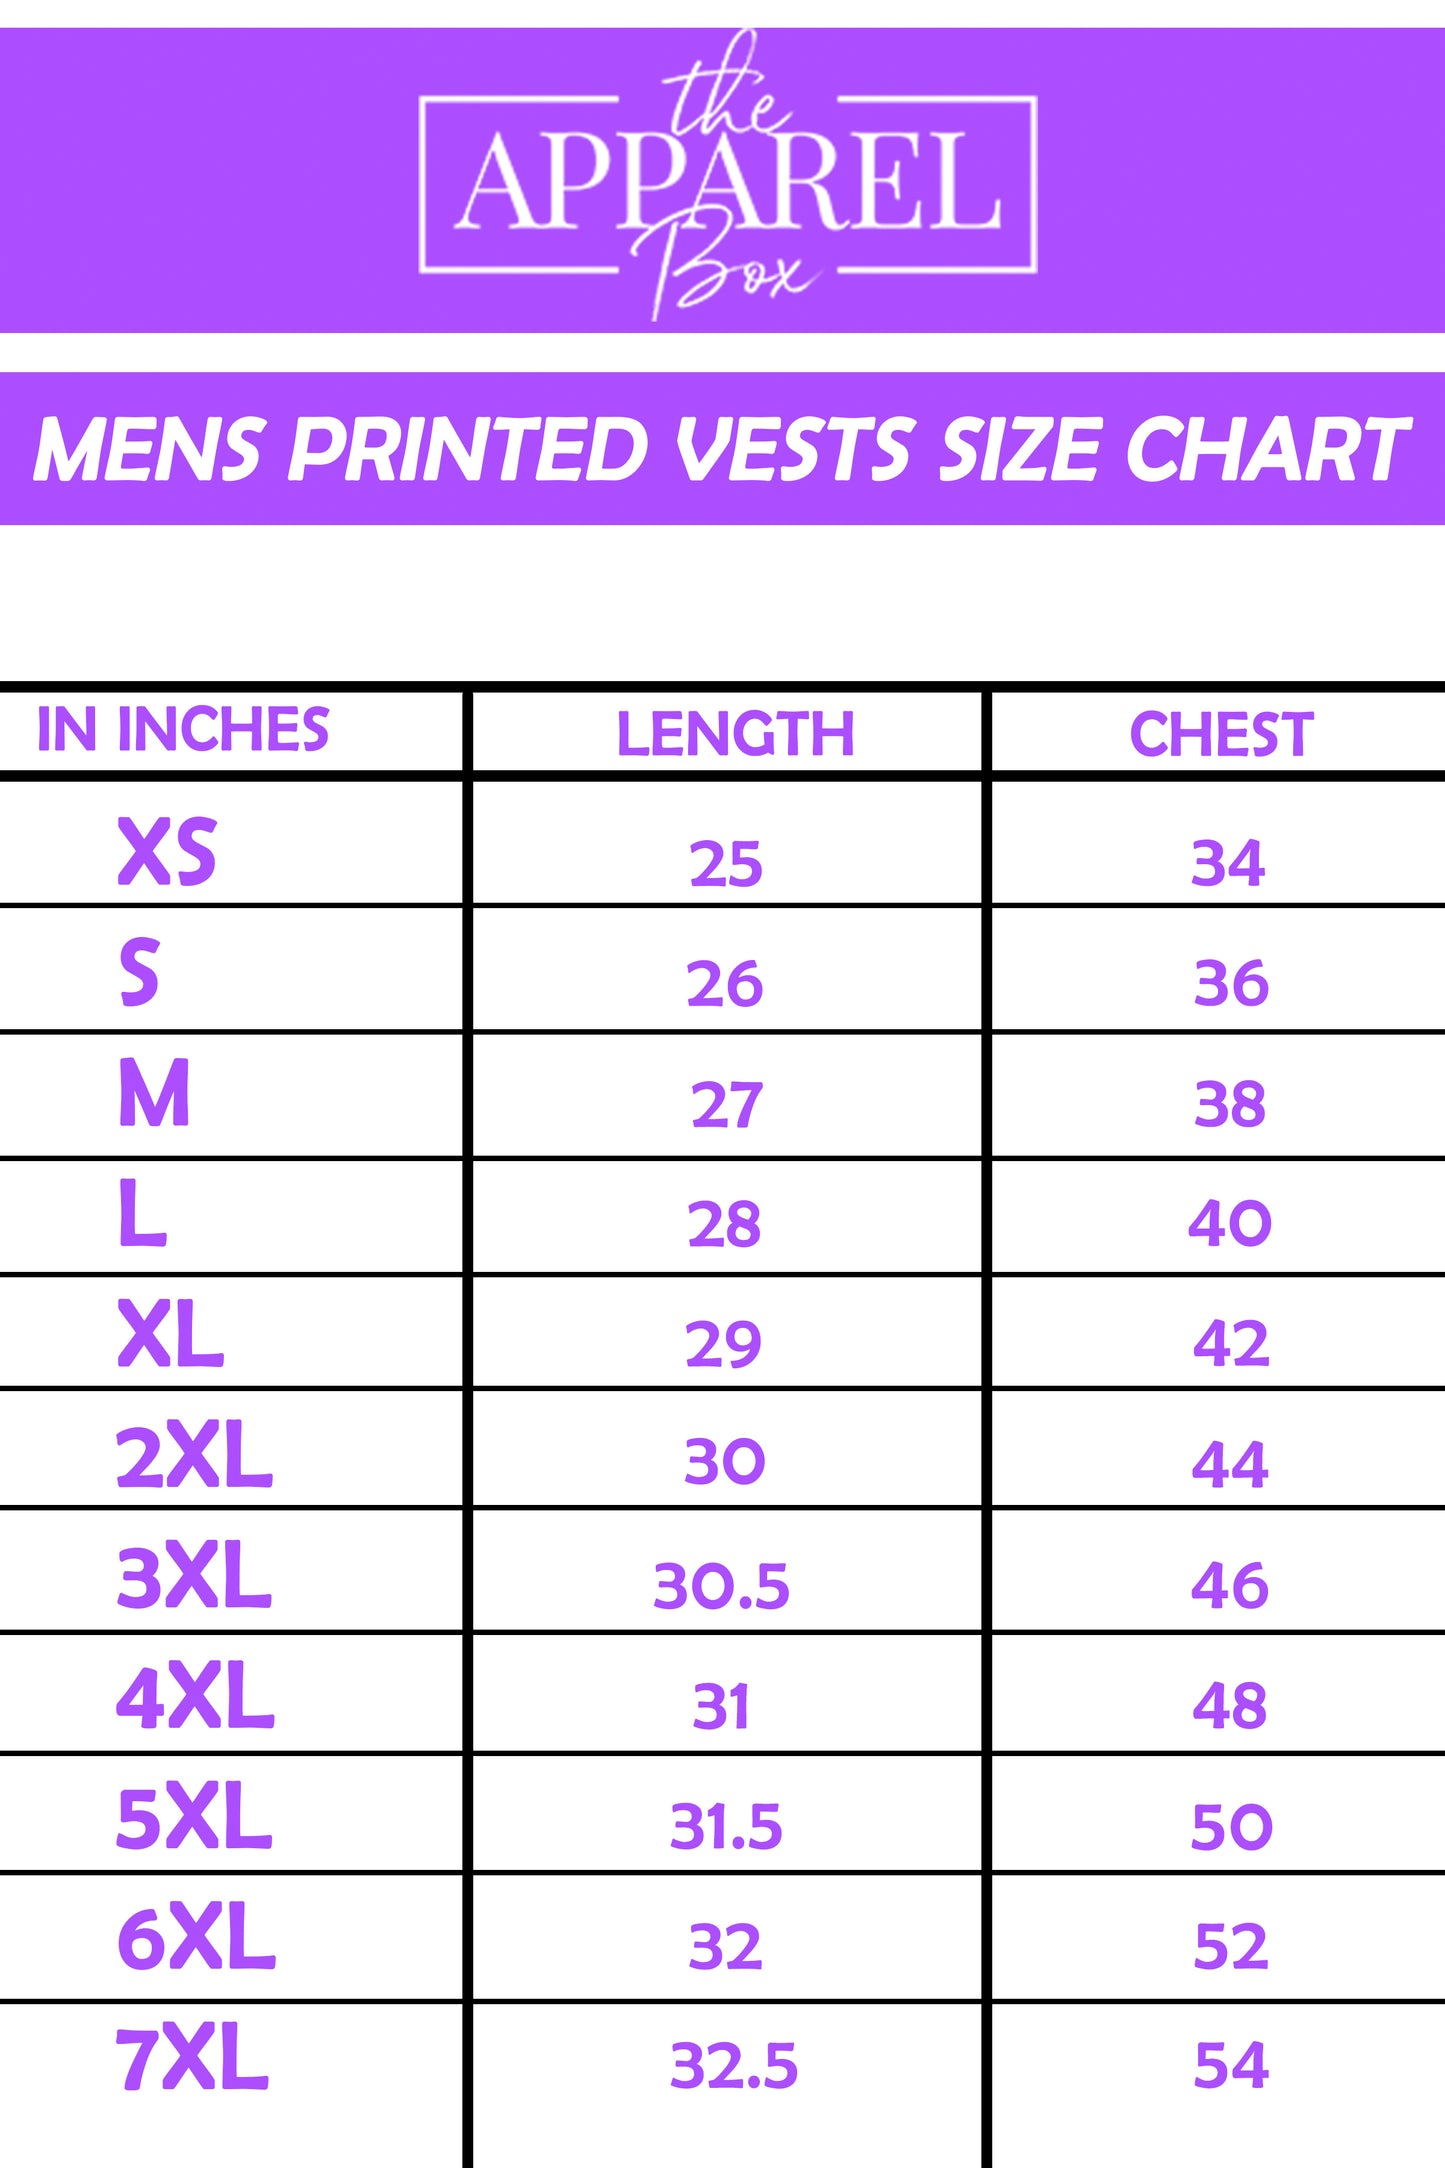 Printed Vest#33